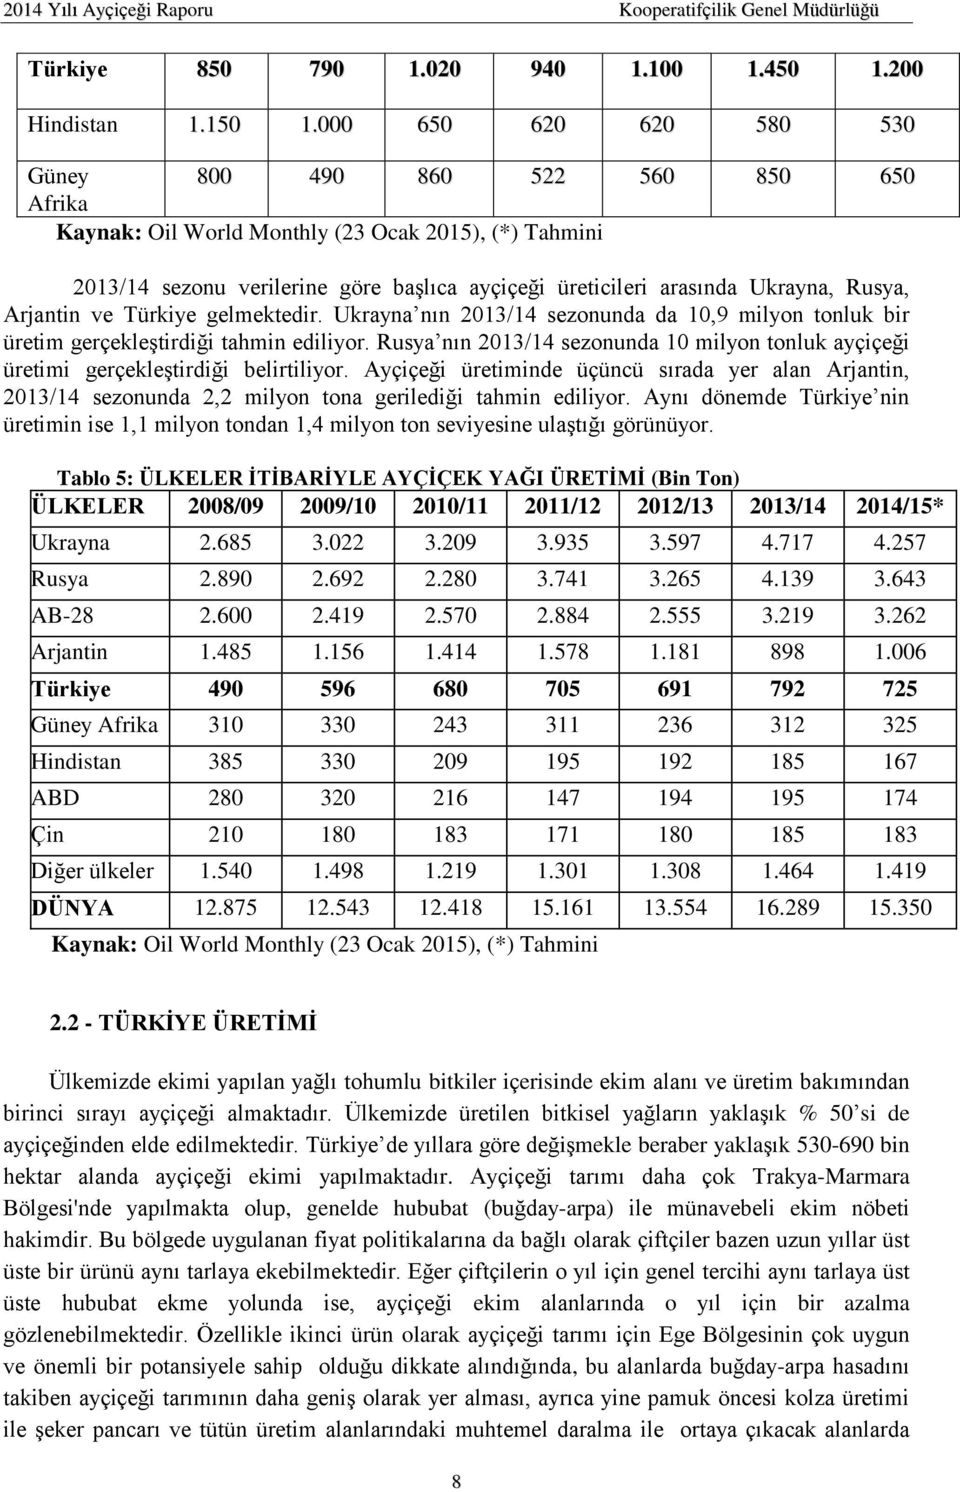 Rusya, Arjantin ve Türkiye gelmektedir. Ukrayna nın 2013/14 sezonunda da 10,9 milyon tonluk bir üretim gerçekleştirdiği tahmin ediliyor.